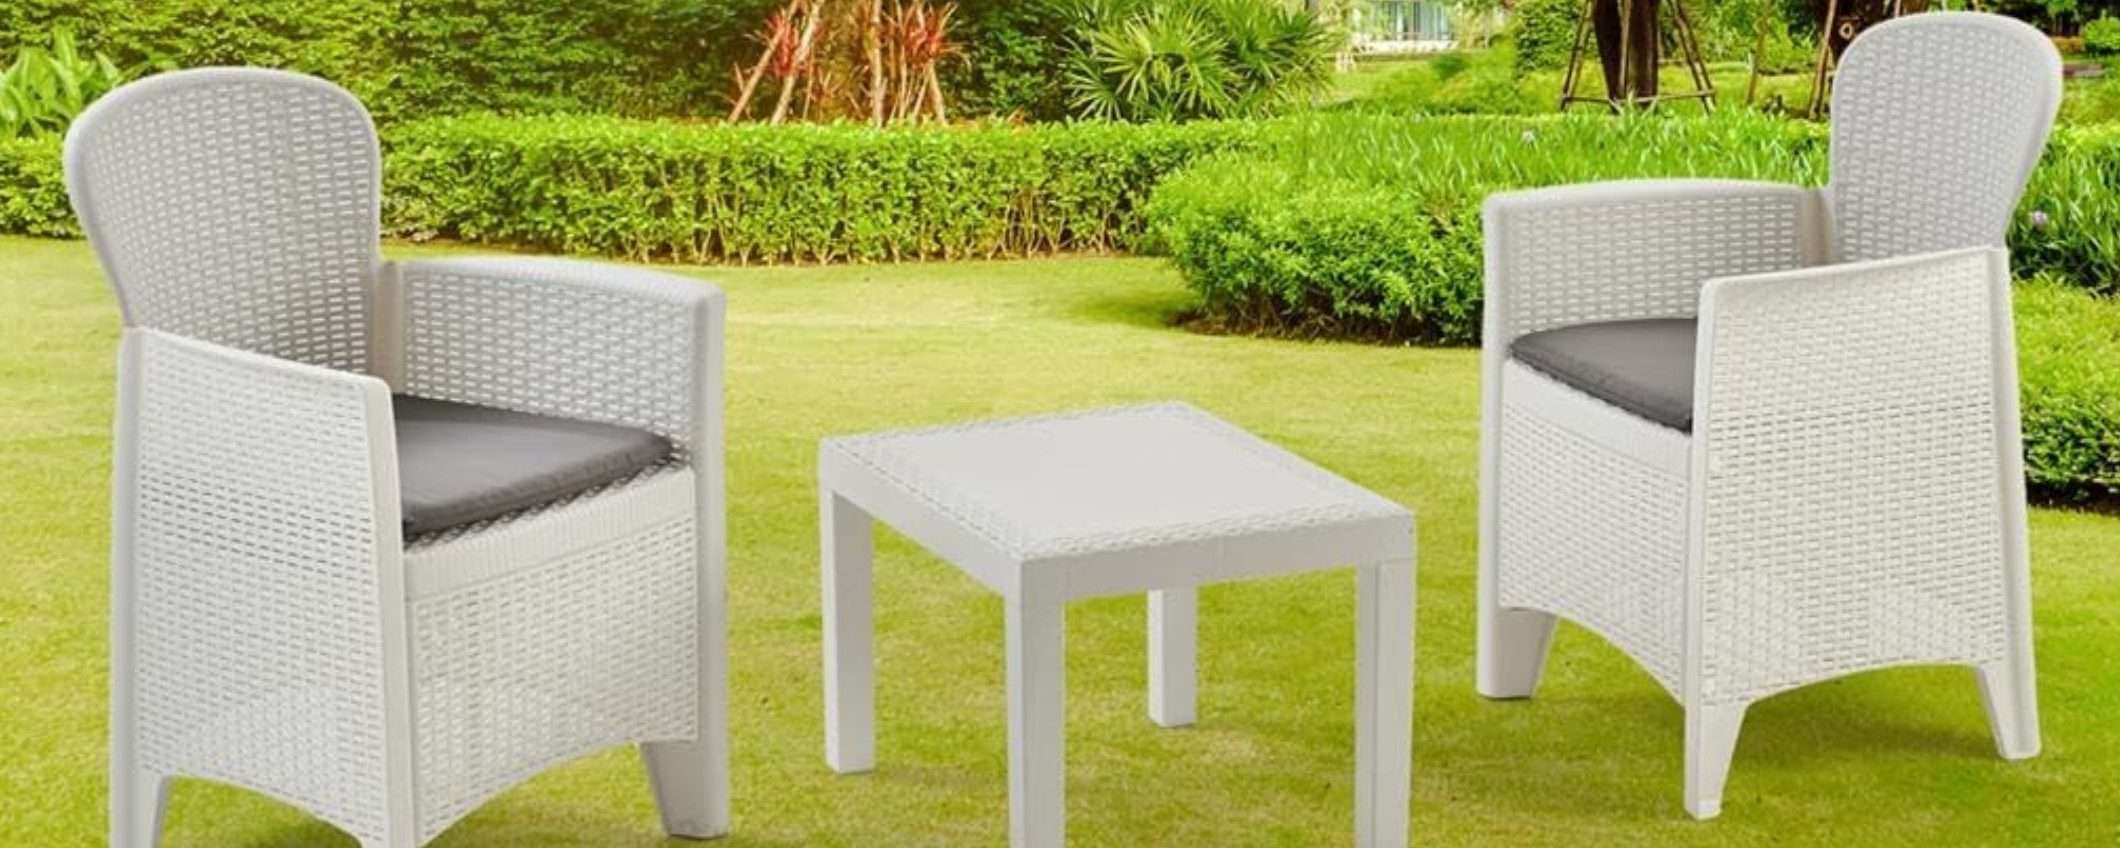 Due poltrone e tavolino: il set per giardino o balcone costa NIENTE (79€)